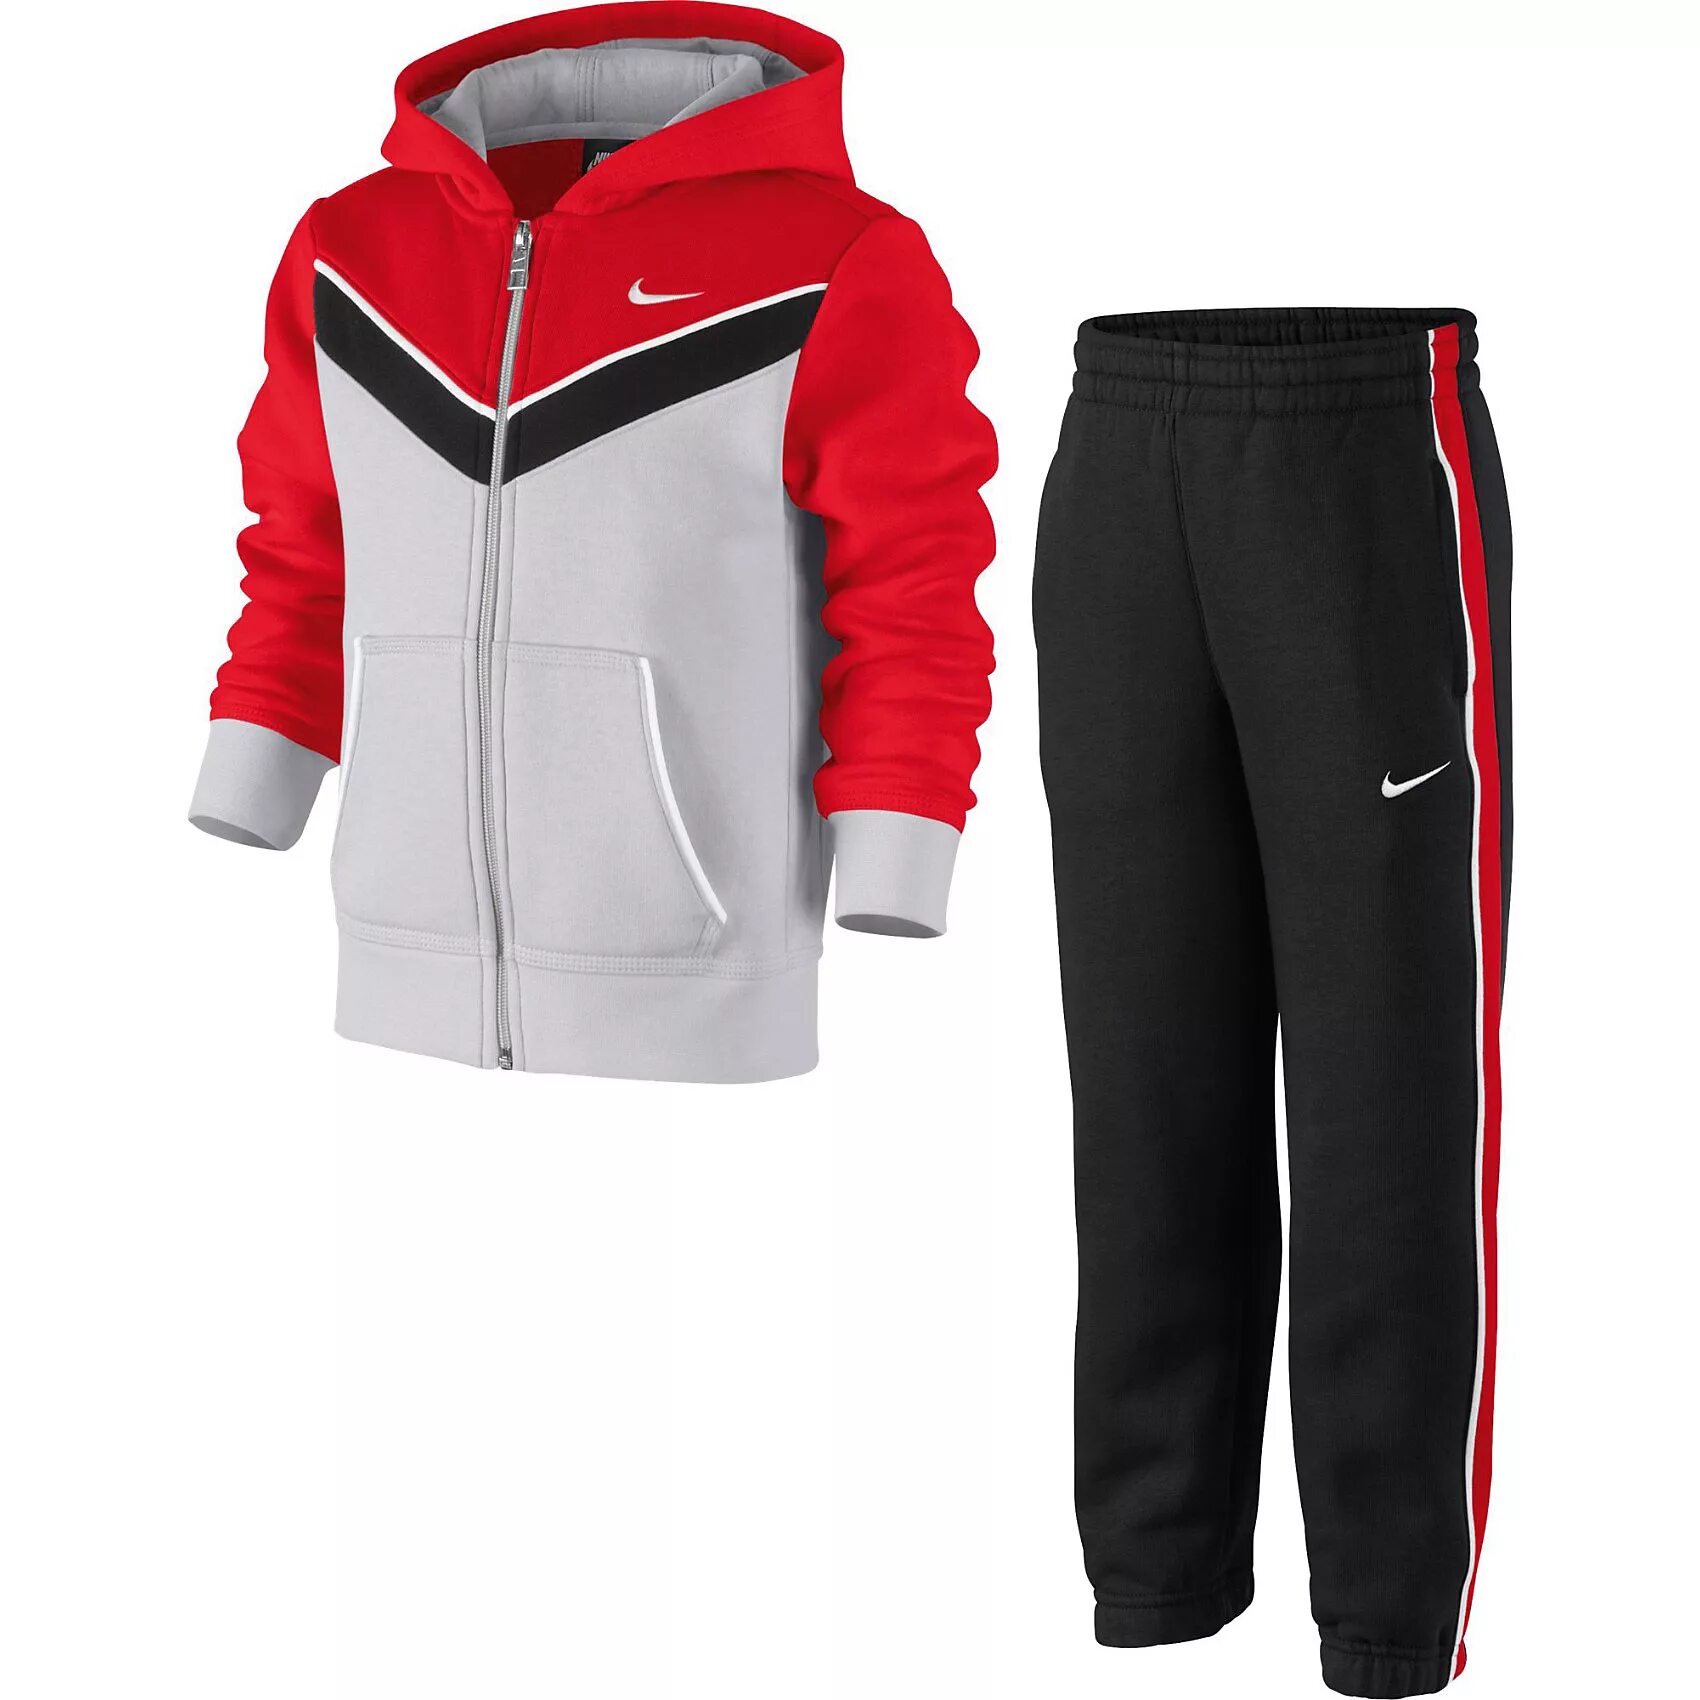 Sports одежда. Спортивный костюм для мальчика Nike ya76 tri bf Cuff Wu LK 14782884. Спортивный костюм 13071 Nike подростковый. Костюм спортивный эластик Nike для мальчиков. Детский спортивный костюм найк 86e417-023.